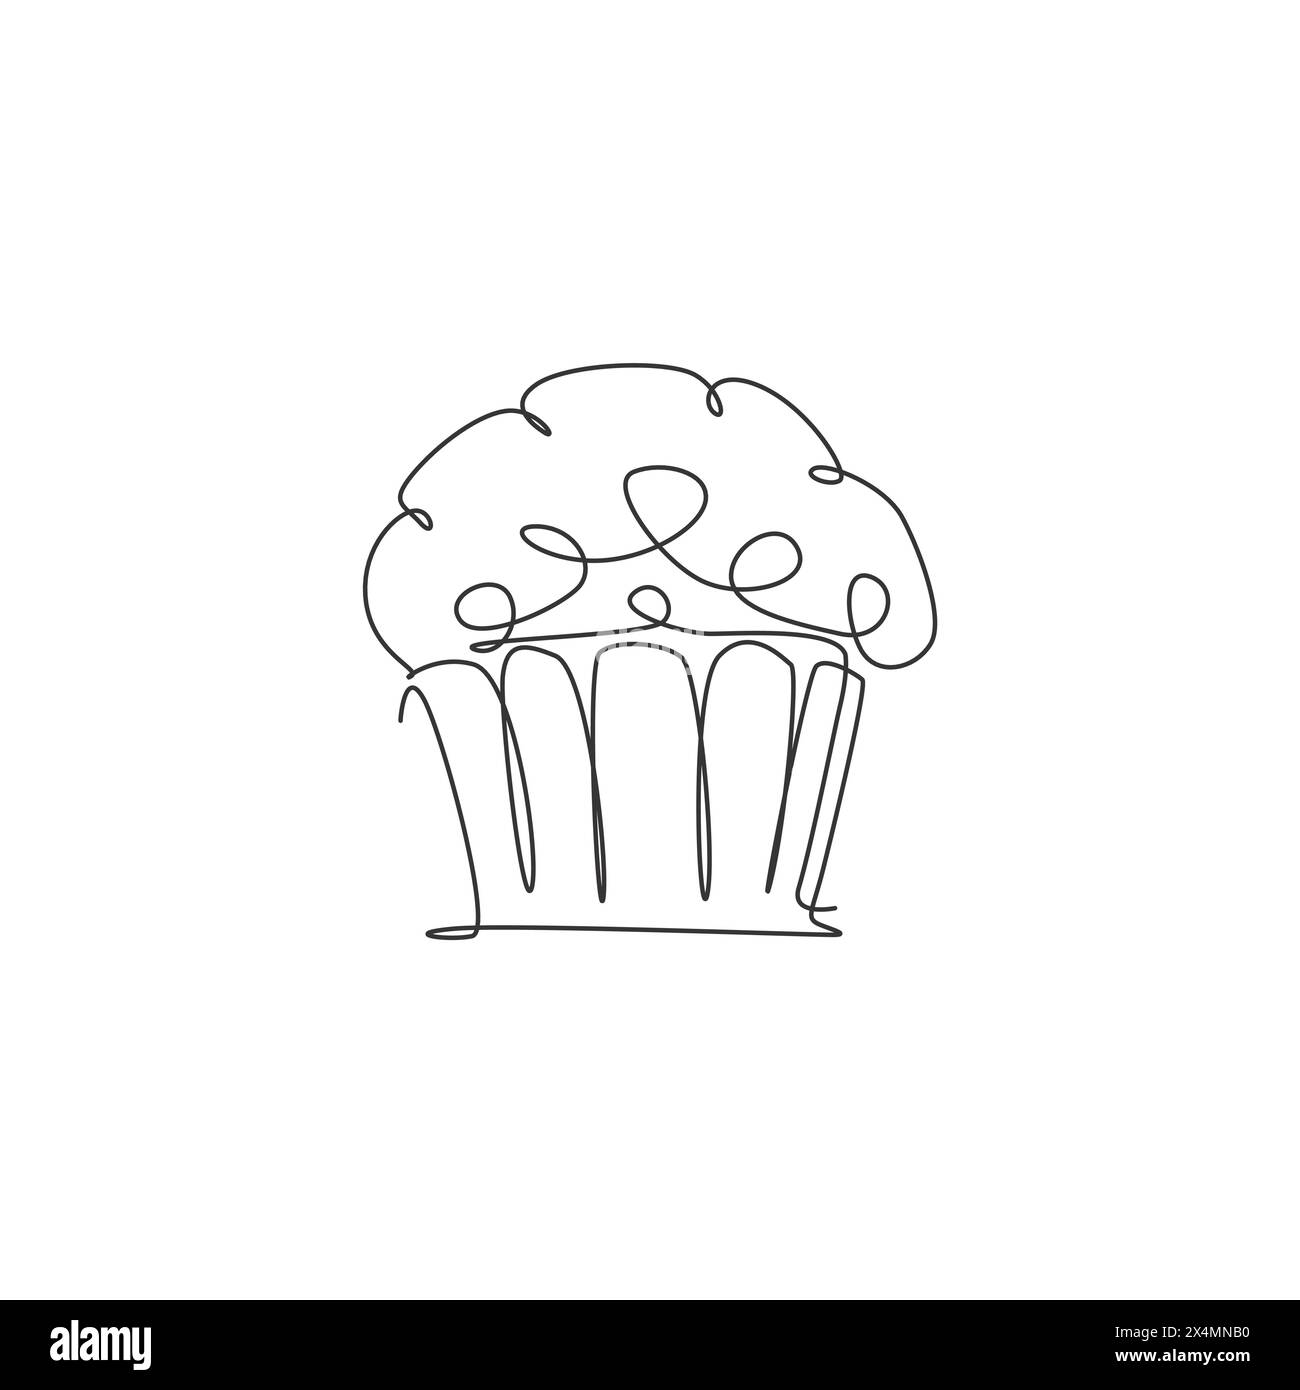 Disegno a linea singola continua dell'etichetta stilizzata del logo del negozio online della torta al muffin. Concetto di pasticceria emblema. Design vettoriale moderno a una linea Illustrazione Vettoriale